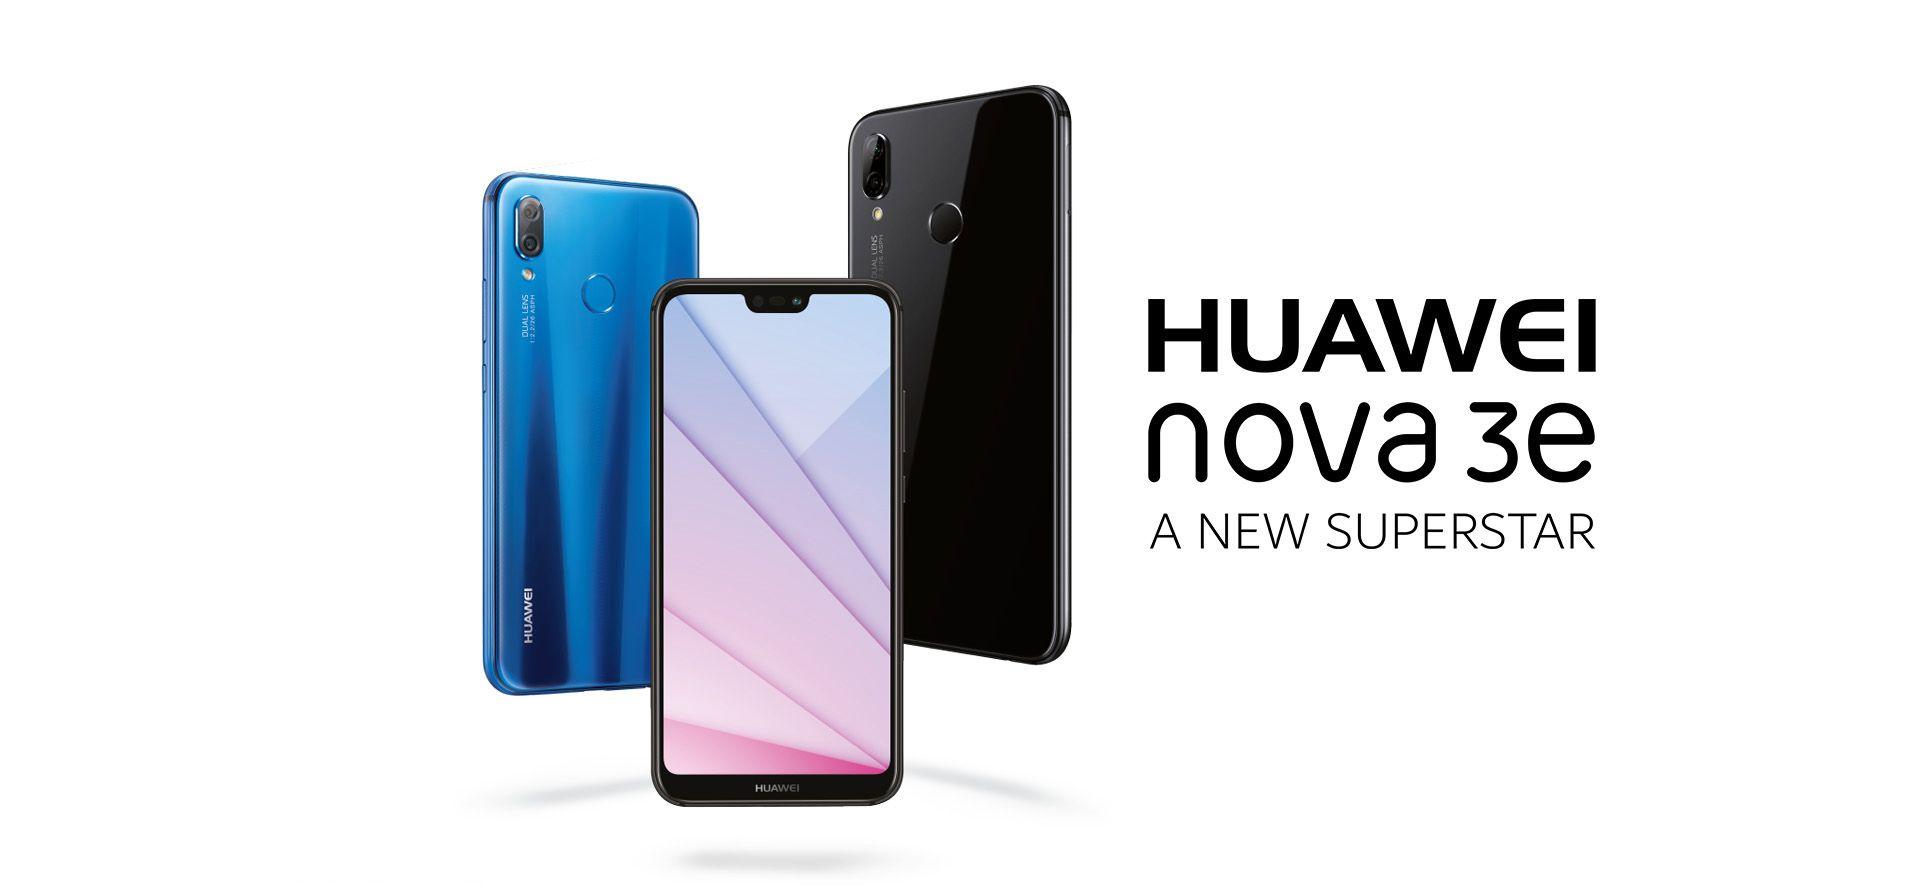 New Huawei Logo - HUAWEI nova 3e Smartphone Features and Reviews| HUAWEI UAE